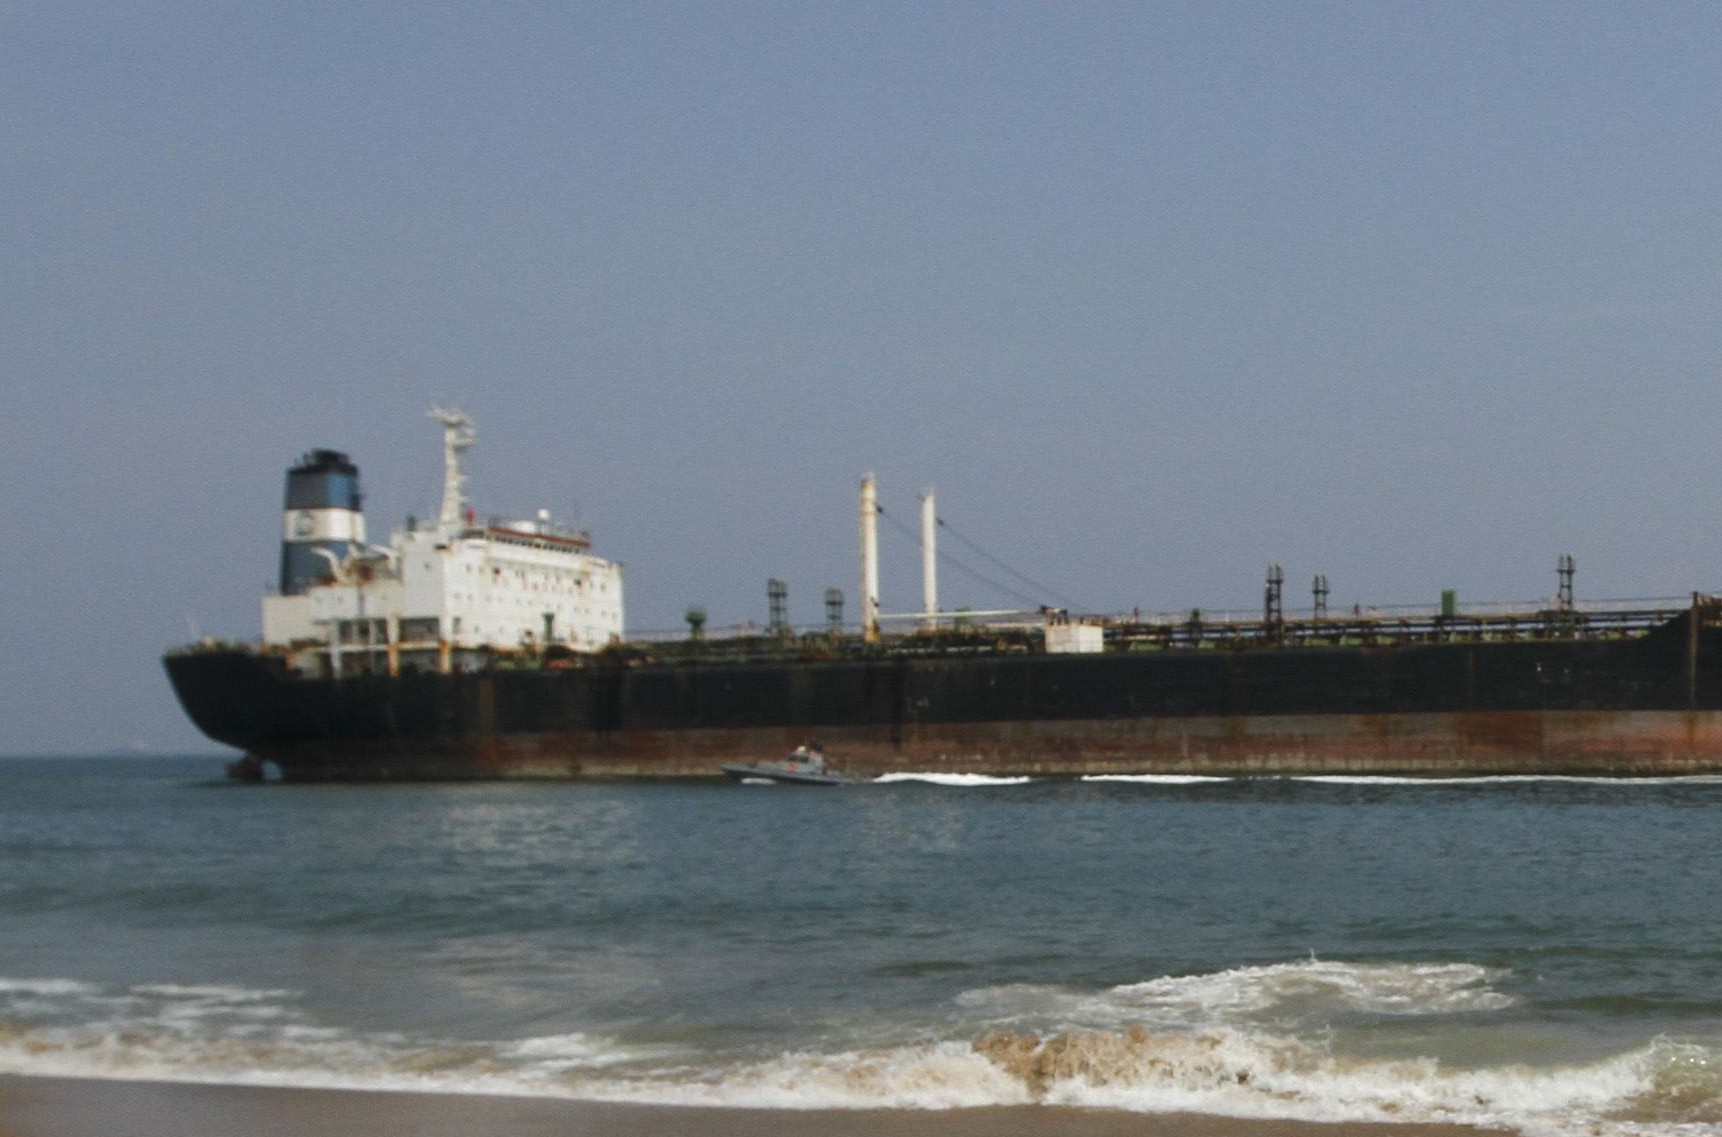 Хитри иранци маскират кораби, за да закарат нелегално петрол на Сирия и Либия